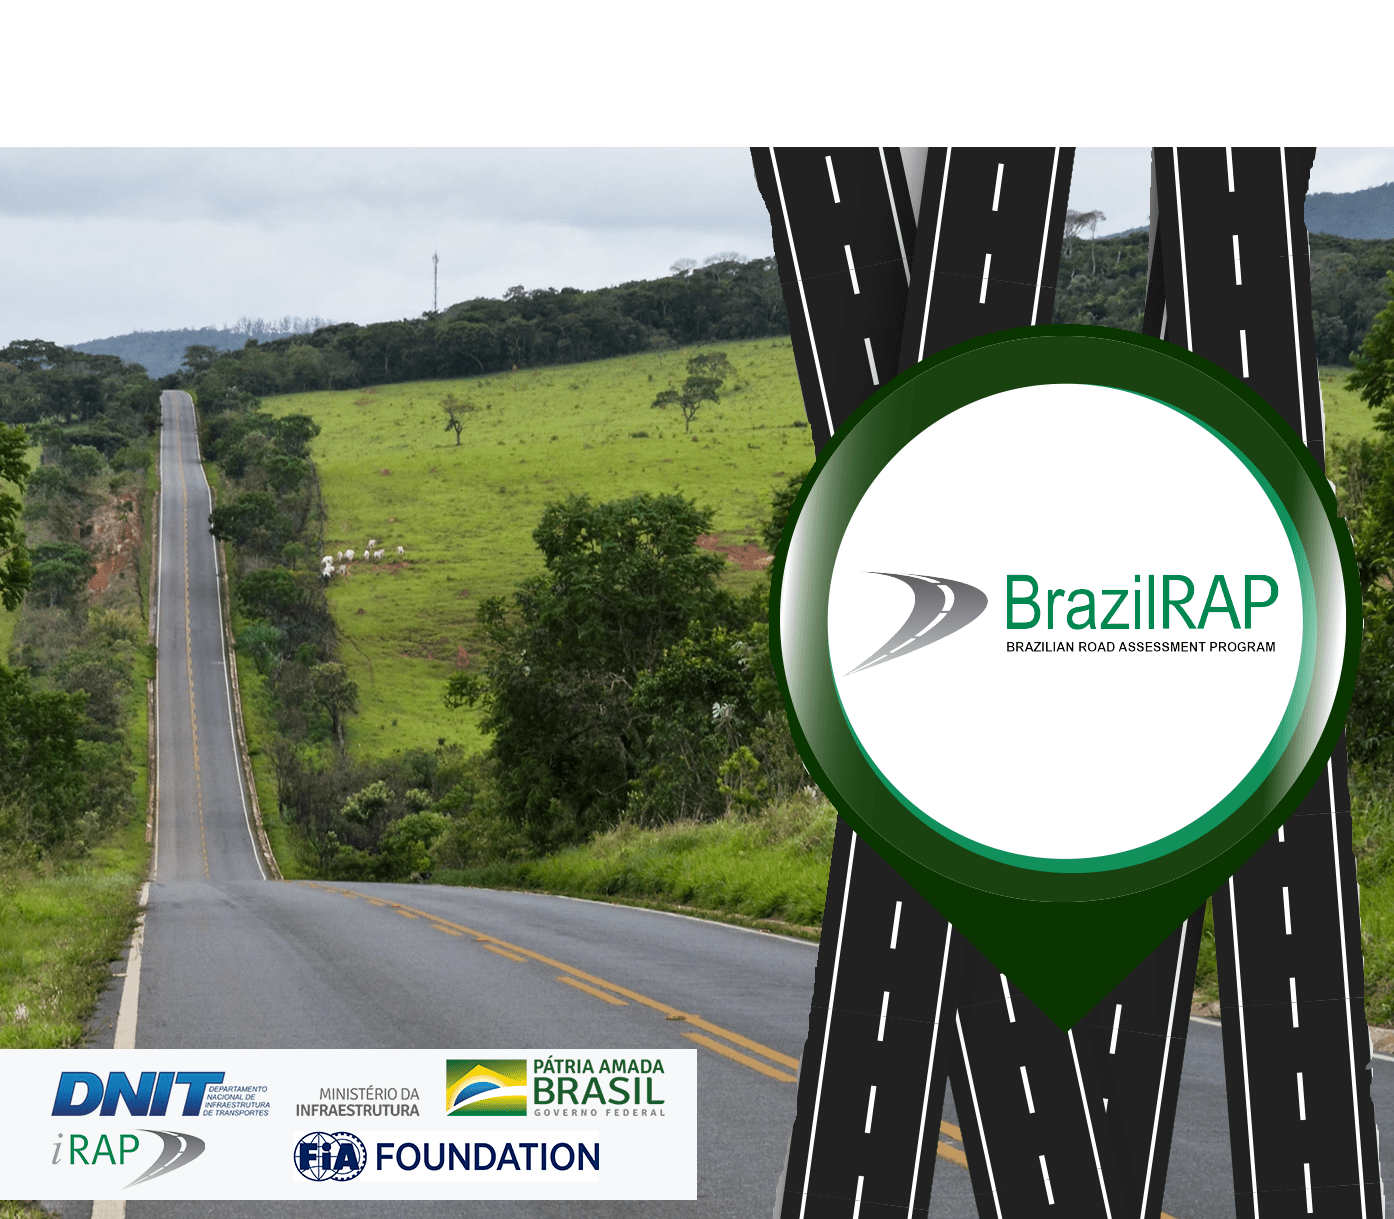 DNIT e iRAP lançam o Programa BrazilRAP para tratar da segurança viária no Brasil